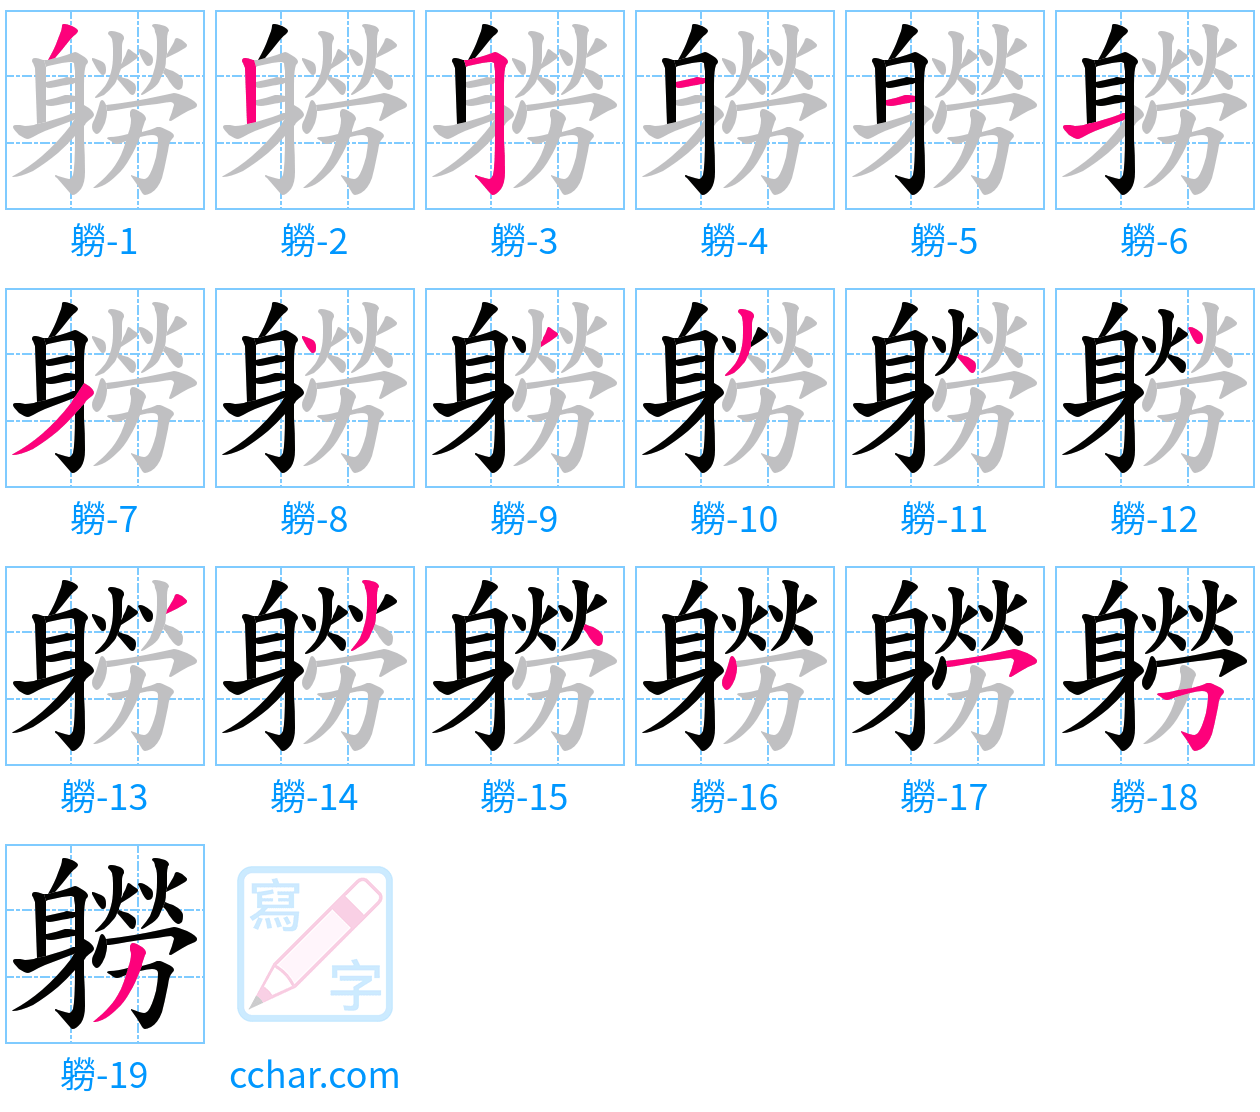 軂 stroke order step-by-step diagram